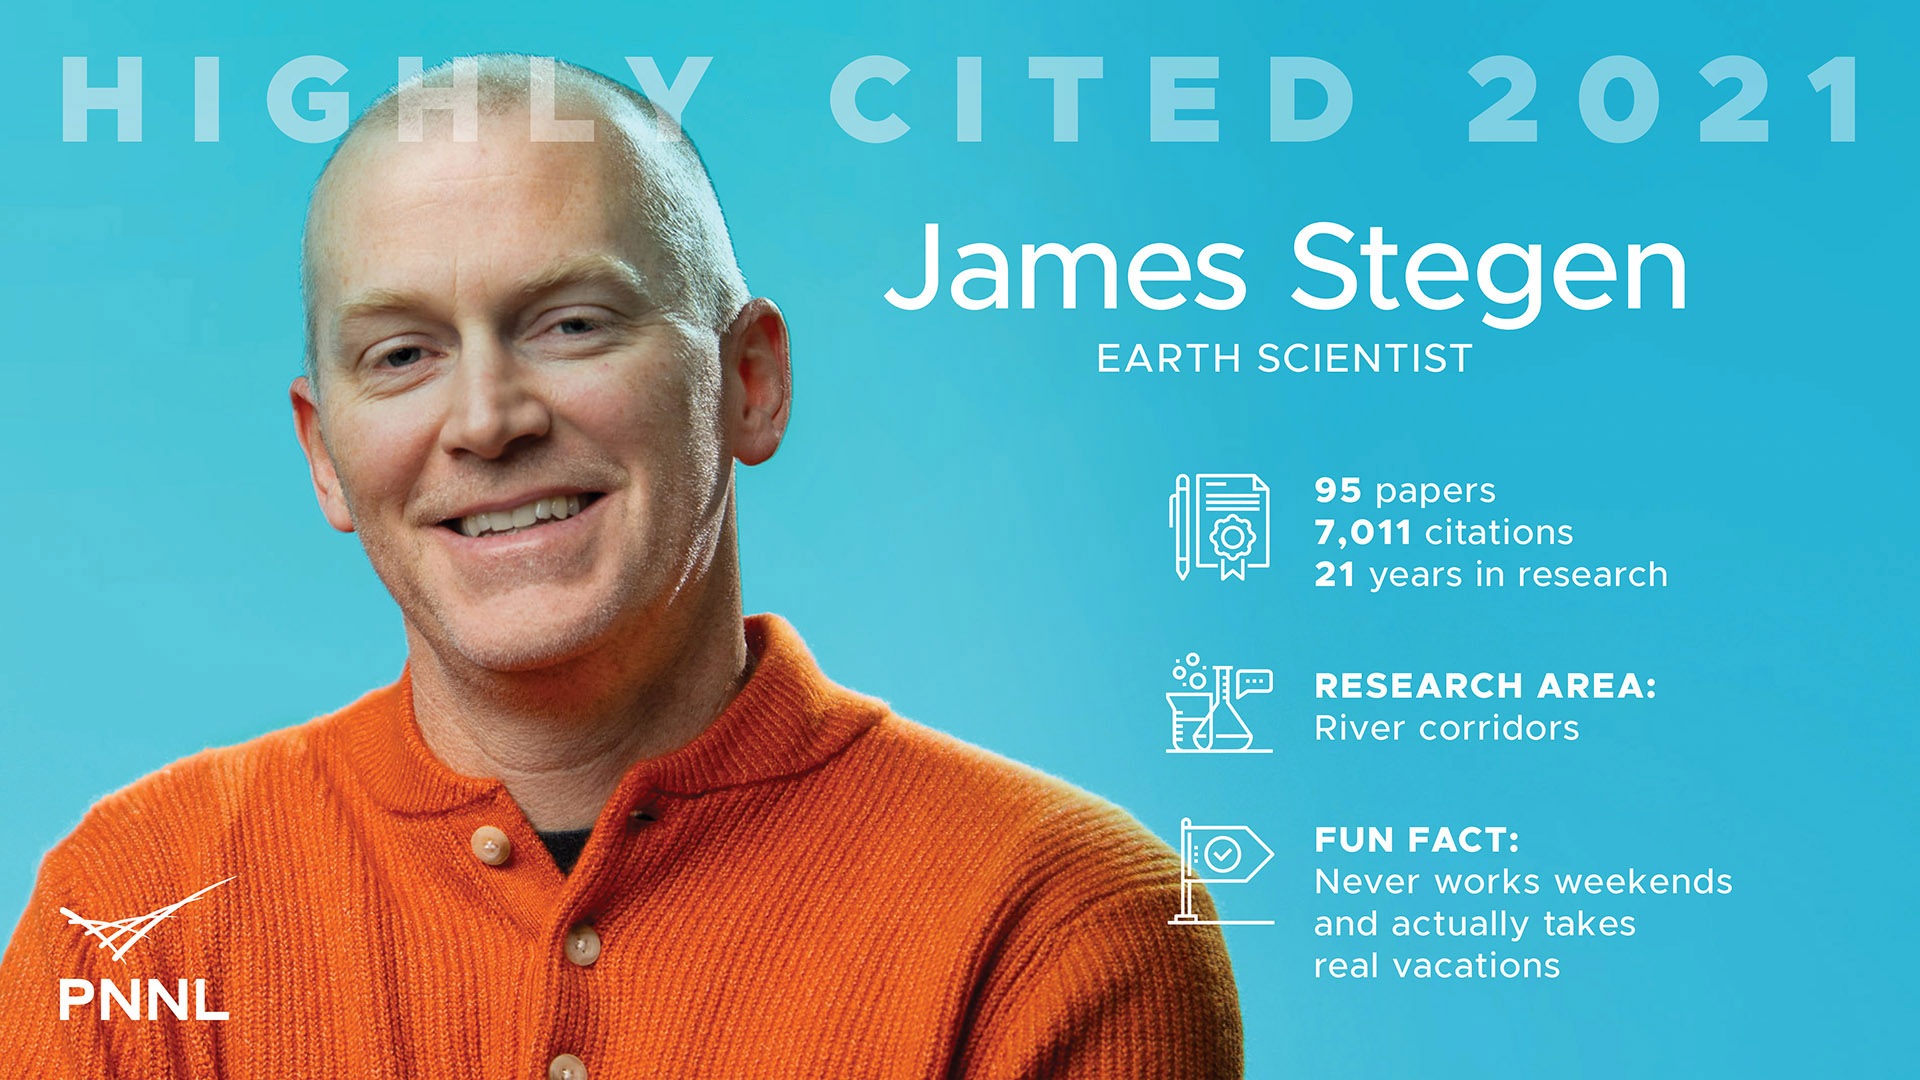 James Stegen Highly Cited 2021 Fact Card